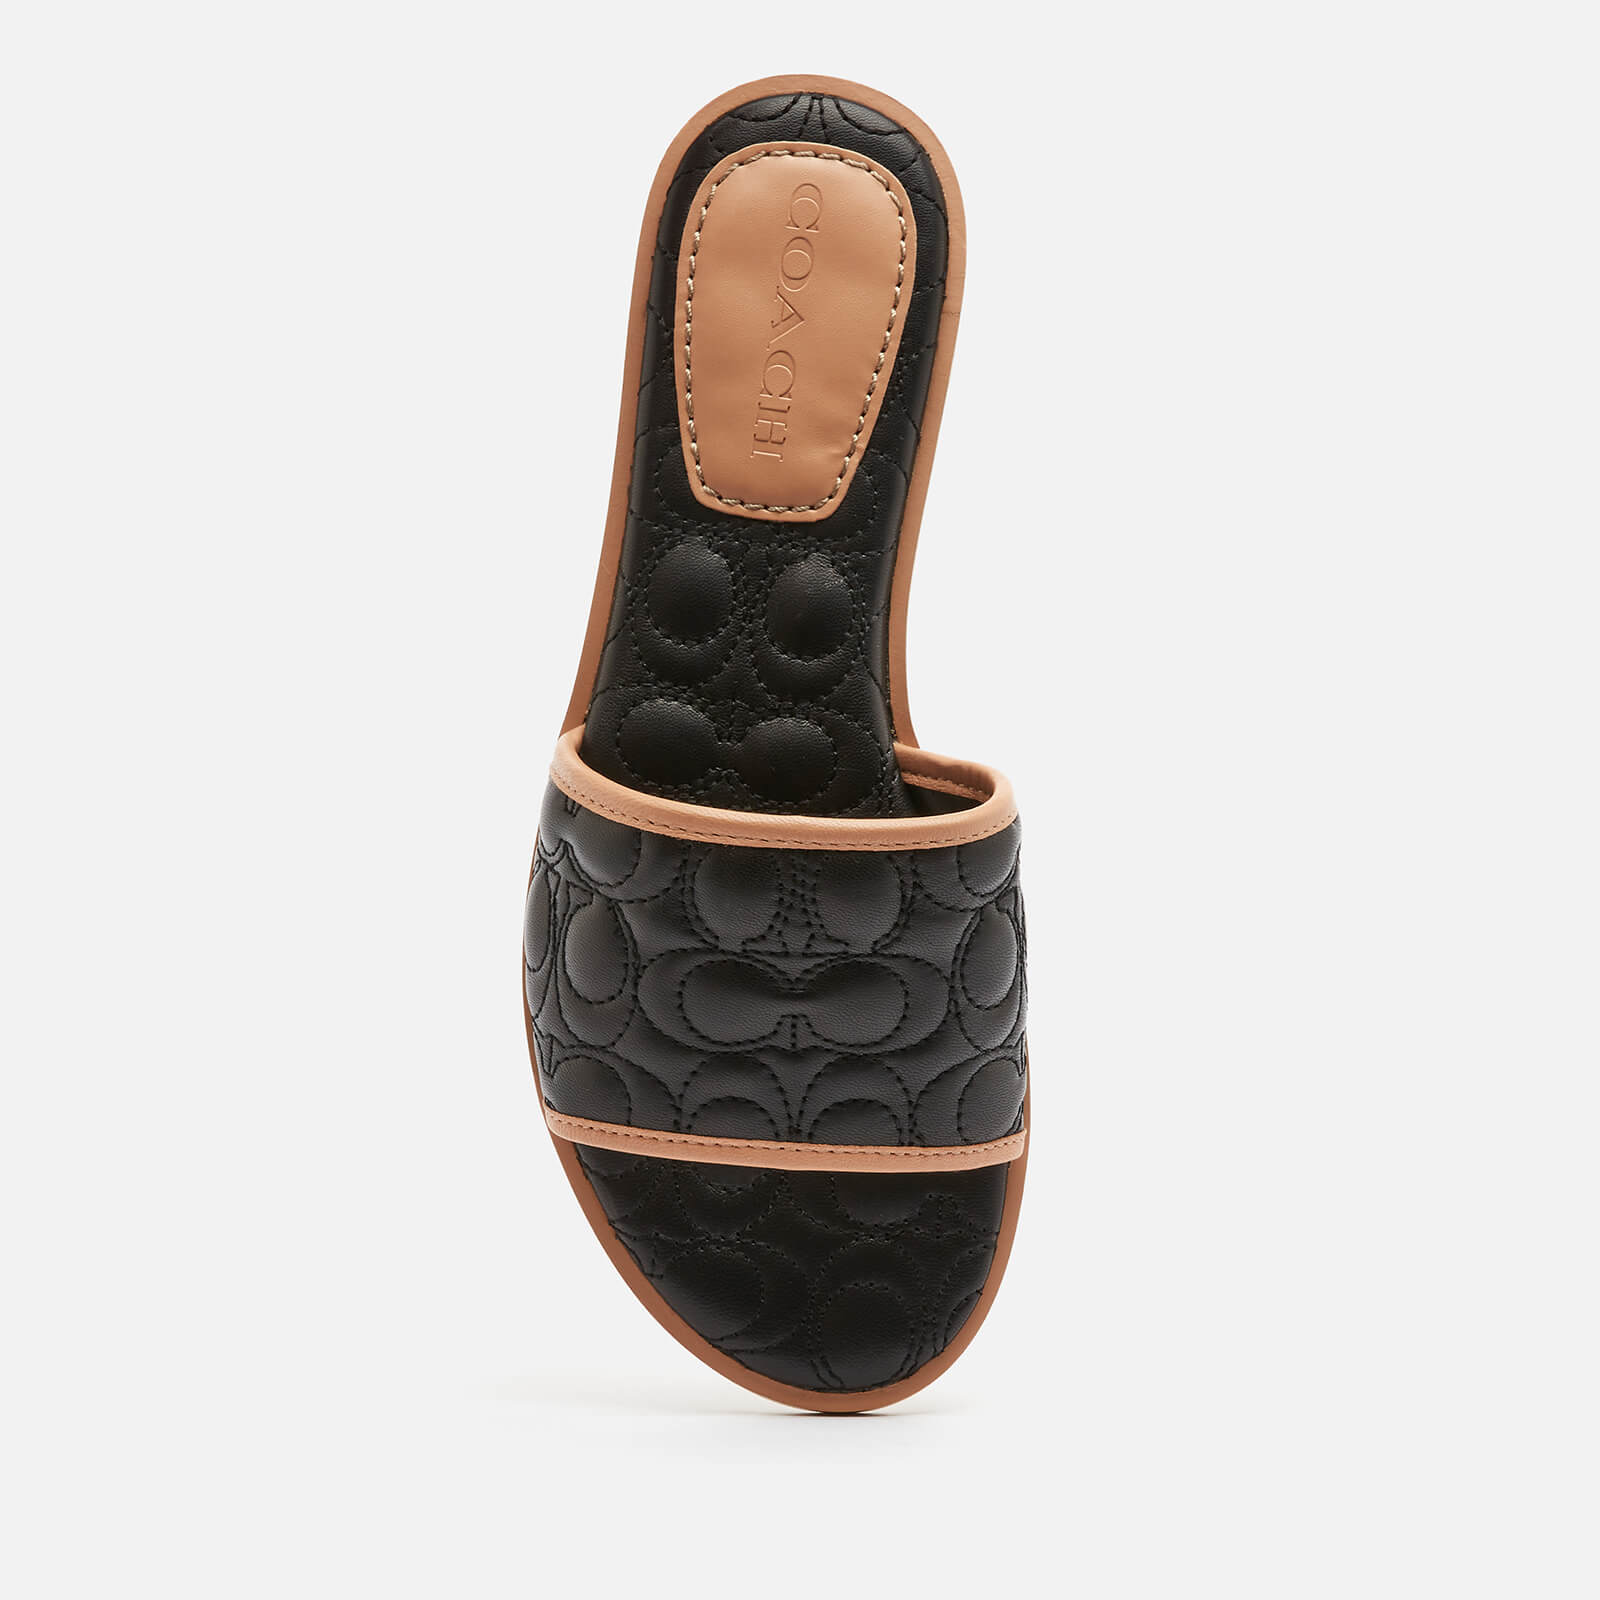 Coach Women's Olivea Quilted Leather Slide Sandals - Black - Uk 3